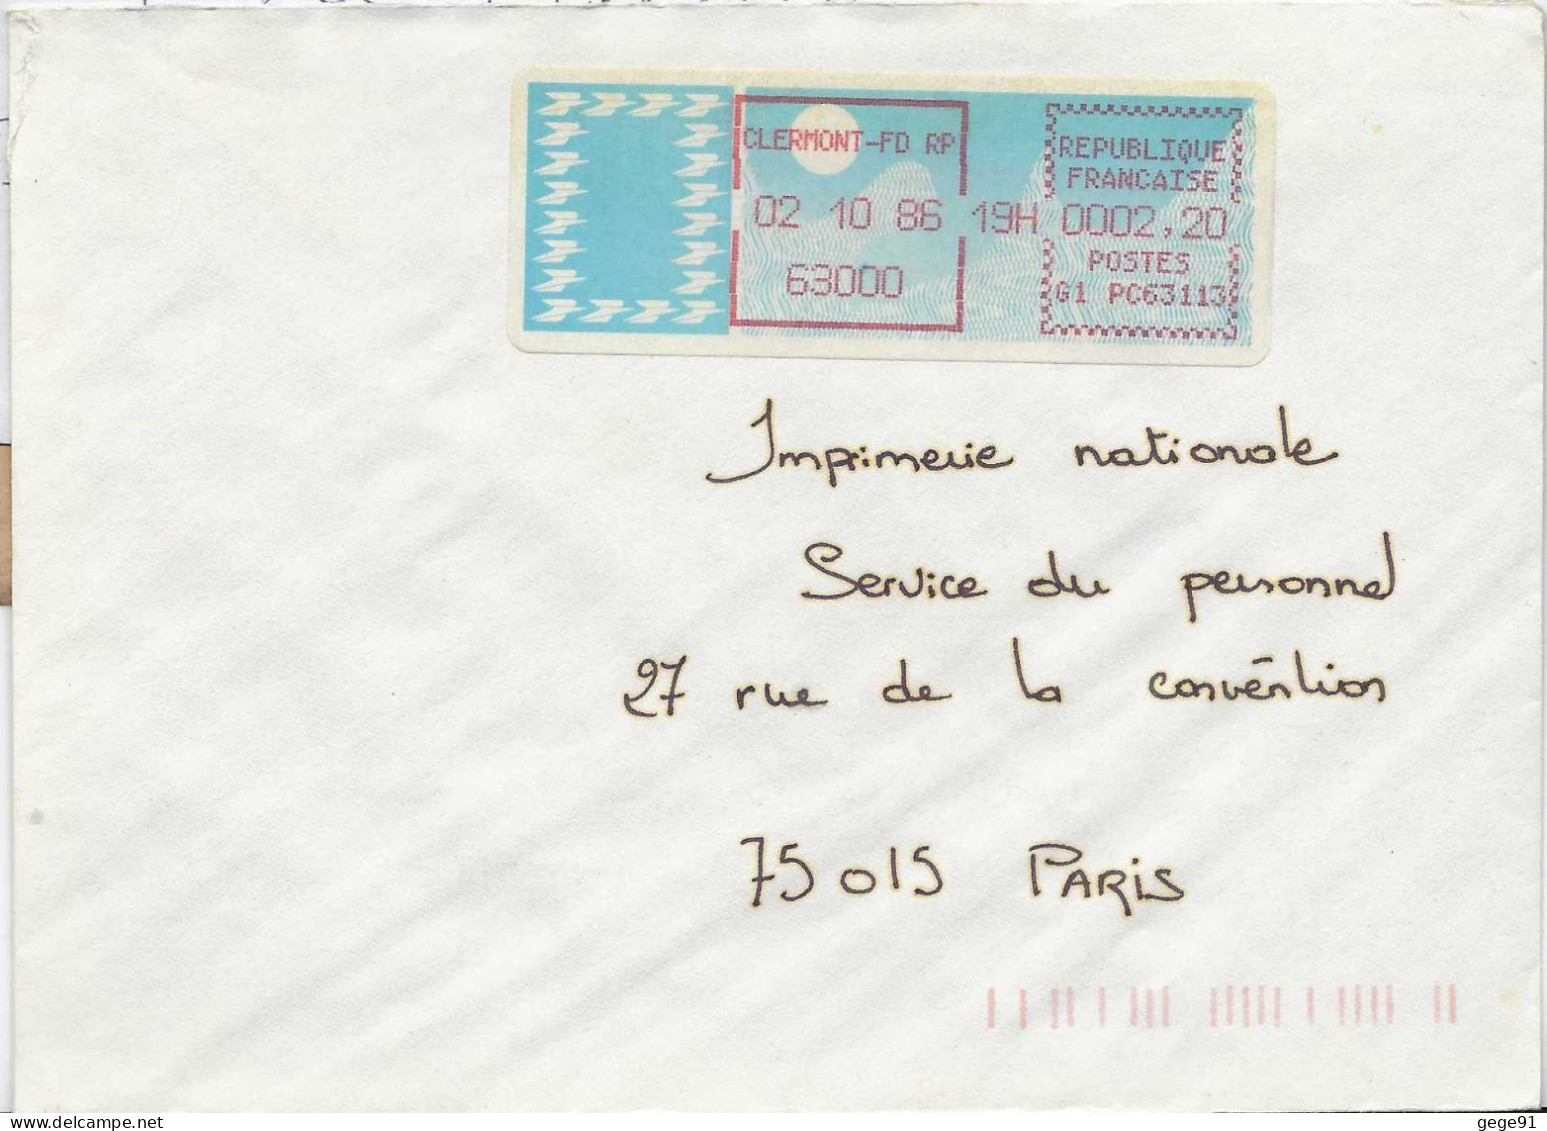 Vignette D'affranchissement De Guichet - MOG - Clermont Ferrand RP - Puy De Dôme - 1985 « Carrier » Papier